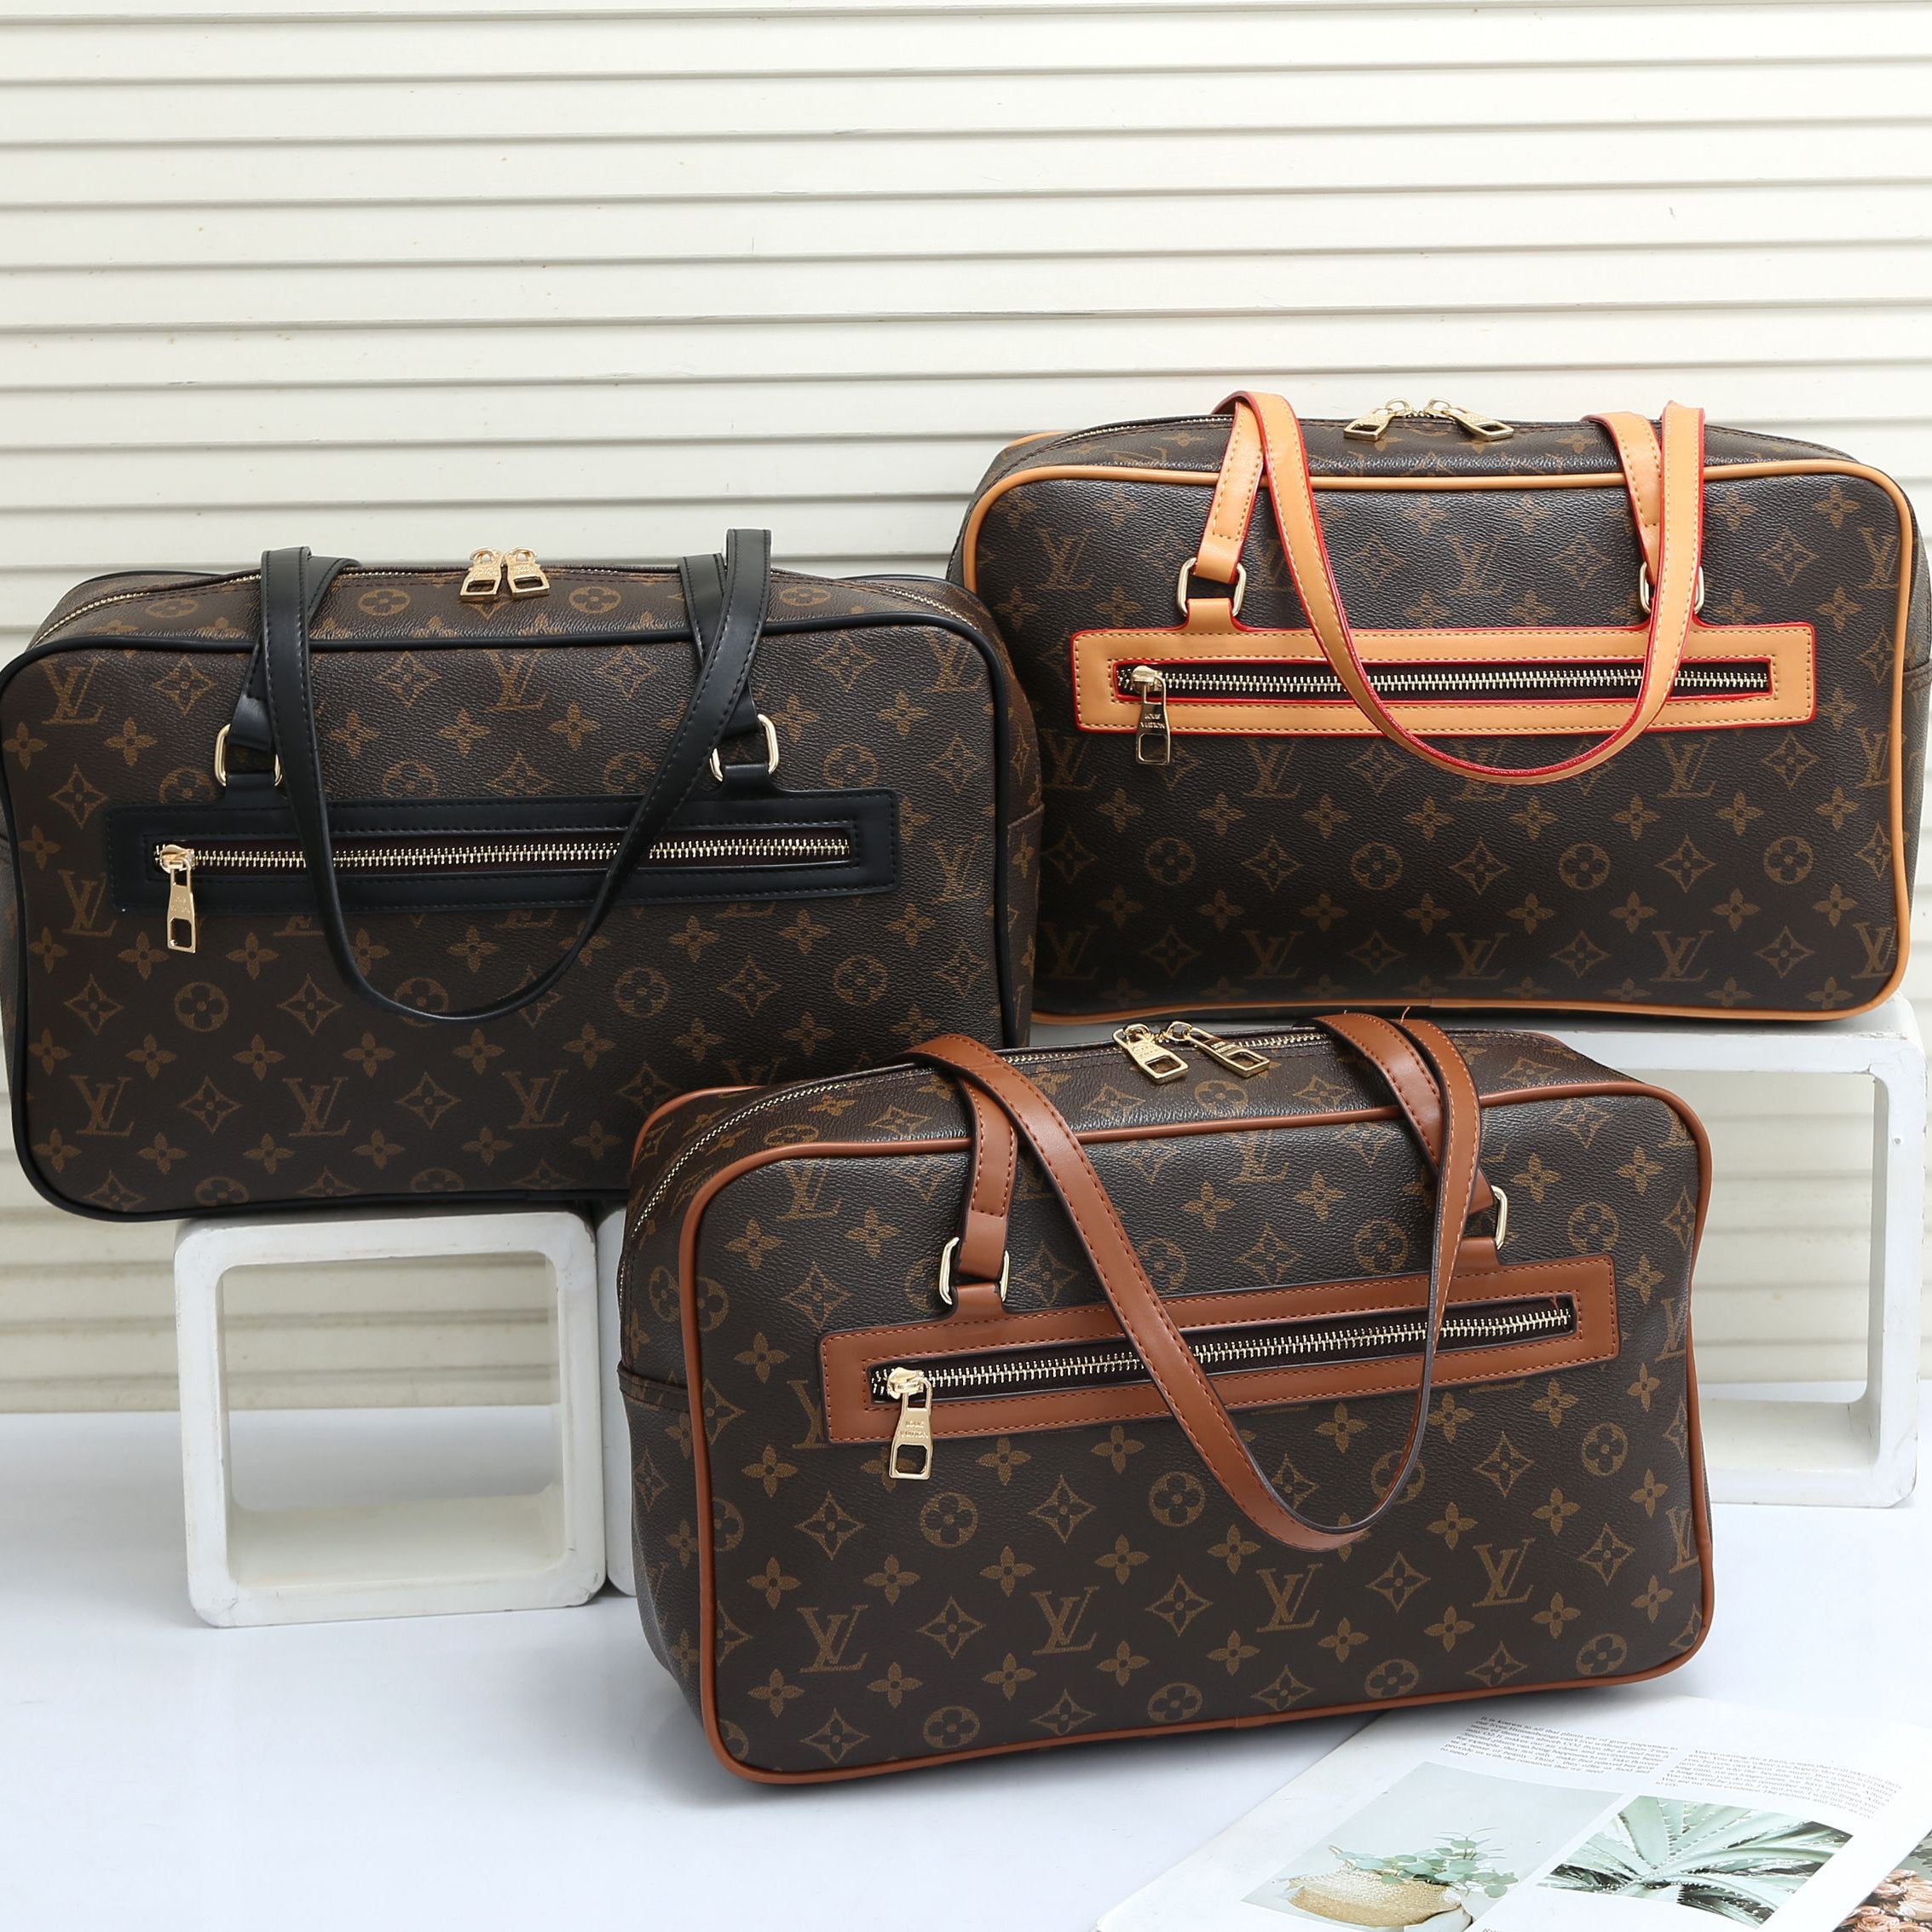 LV Louis Vuitton Fashion Men's and Women's Handbags Shou